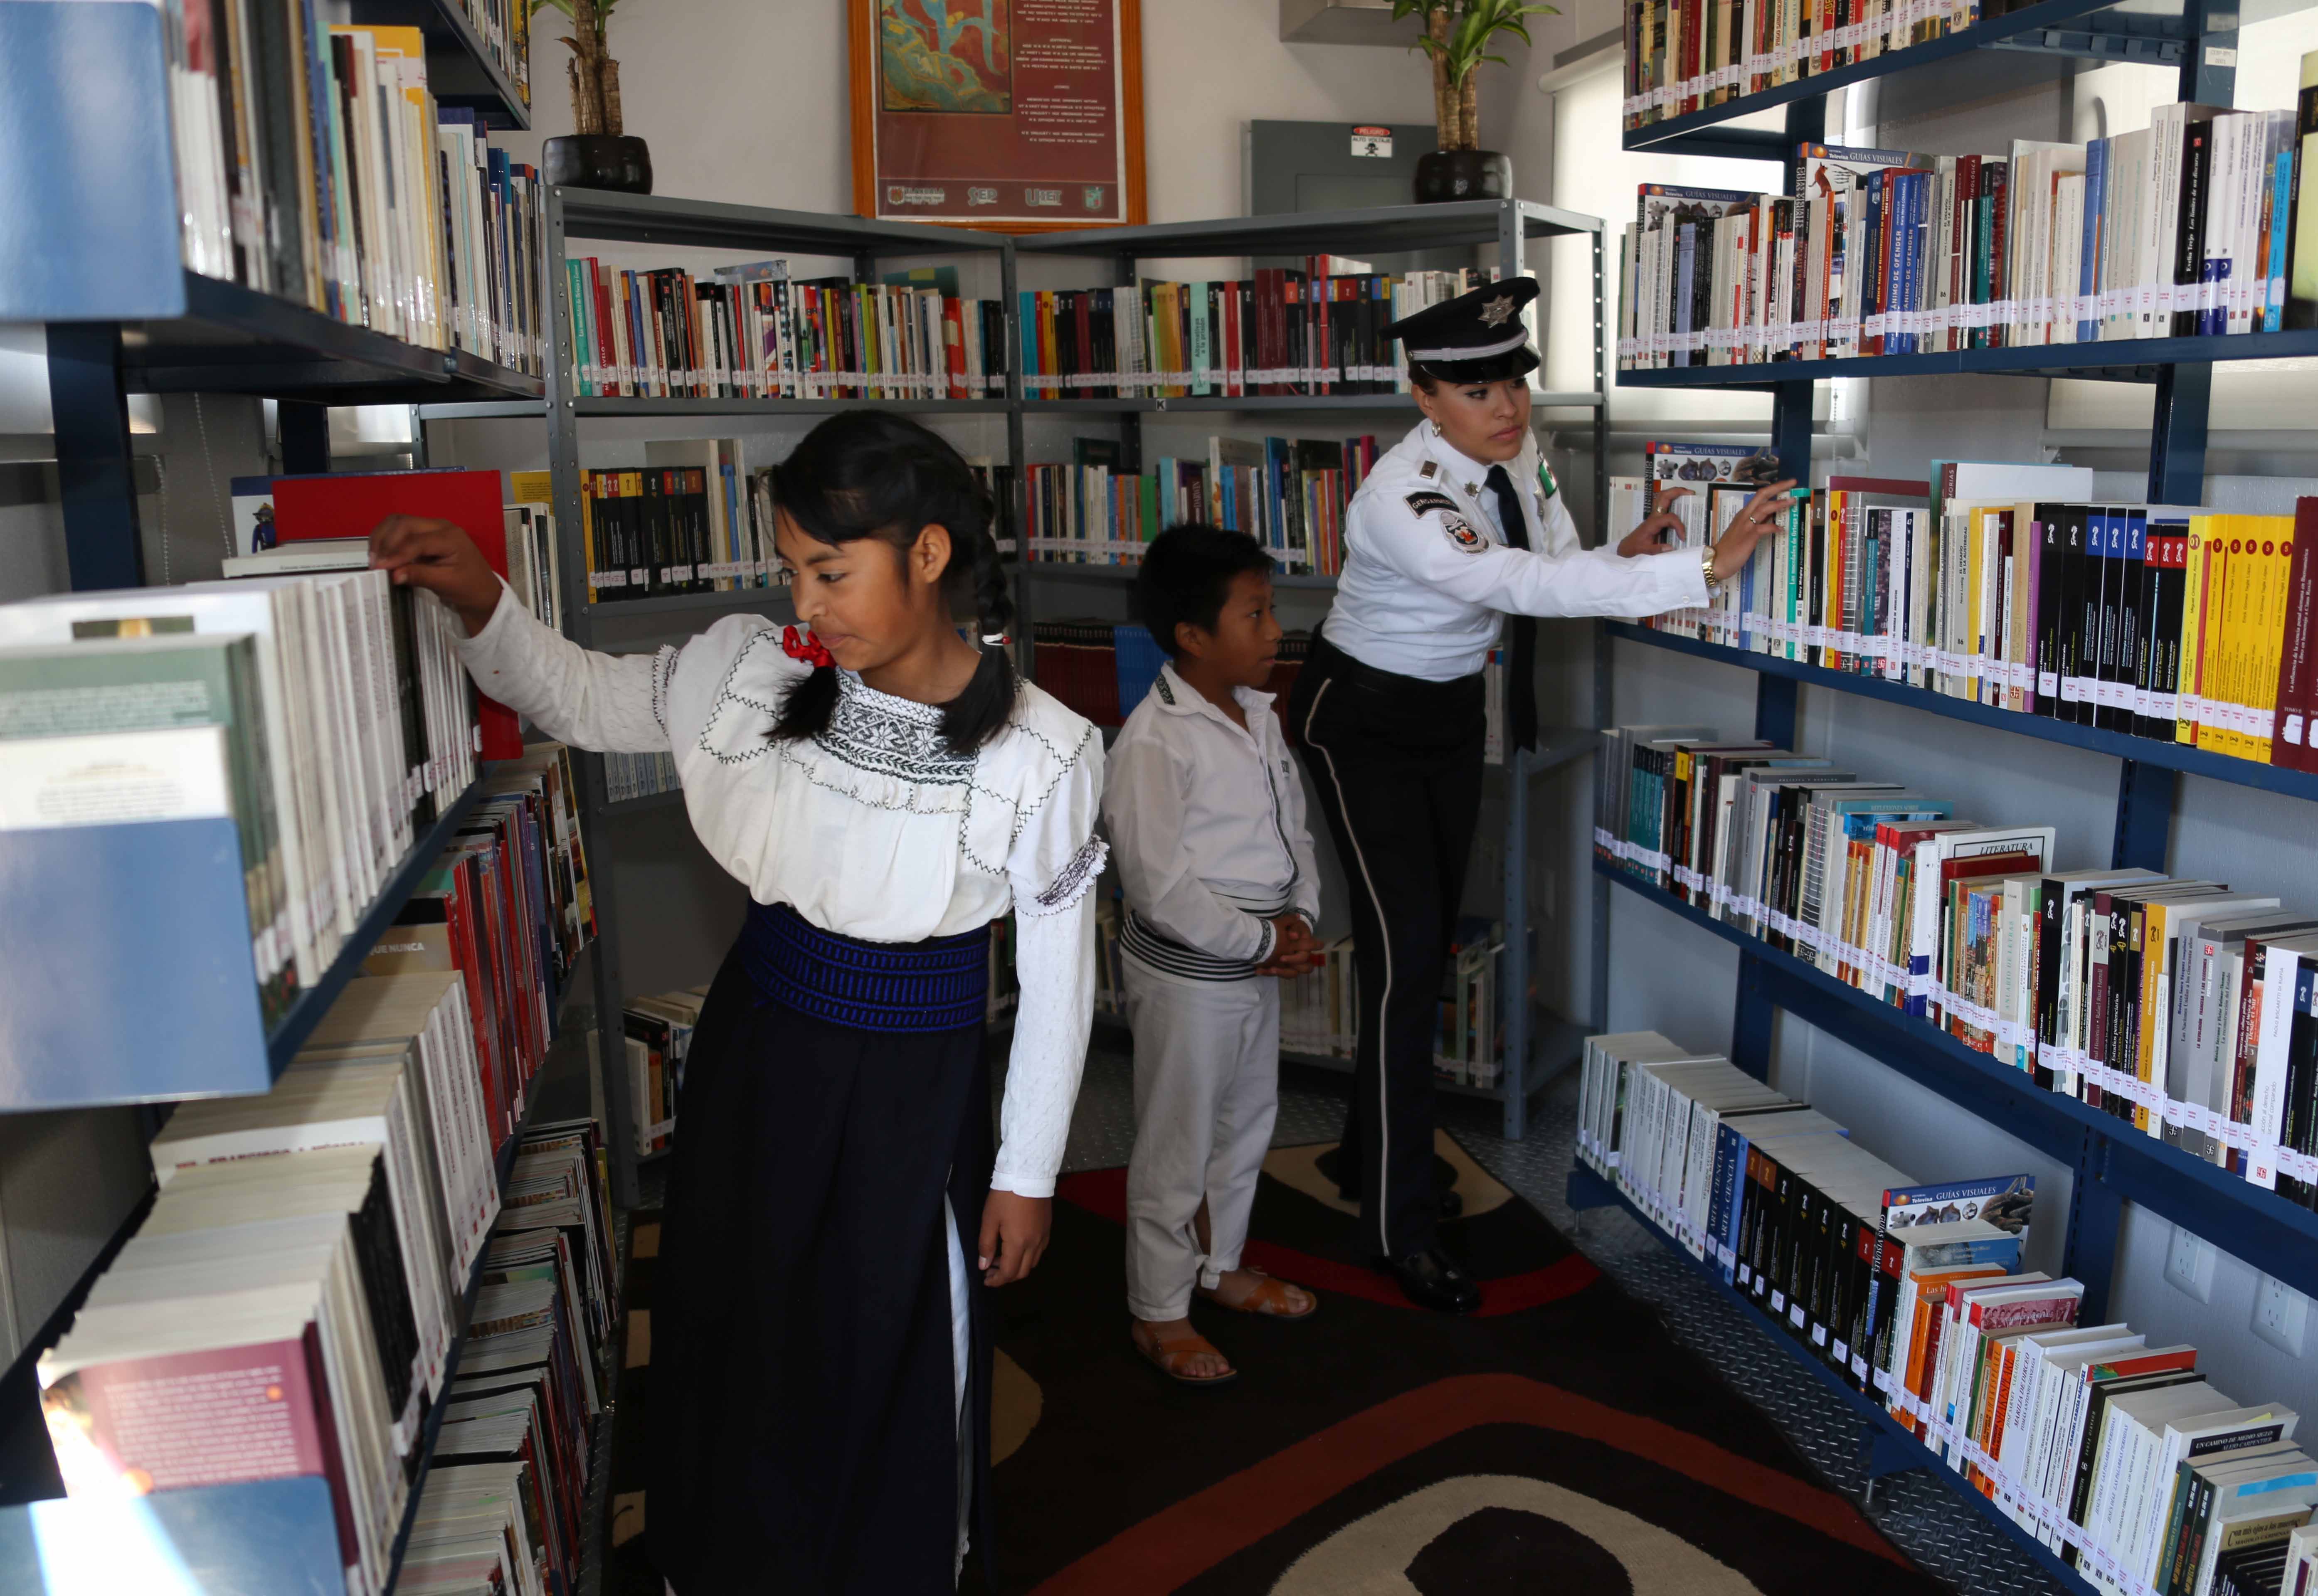 Inauguración de la Biblioteca Itinerante “Xavier Velasco”, en el Estado de Tlaxcala